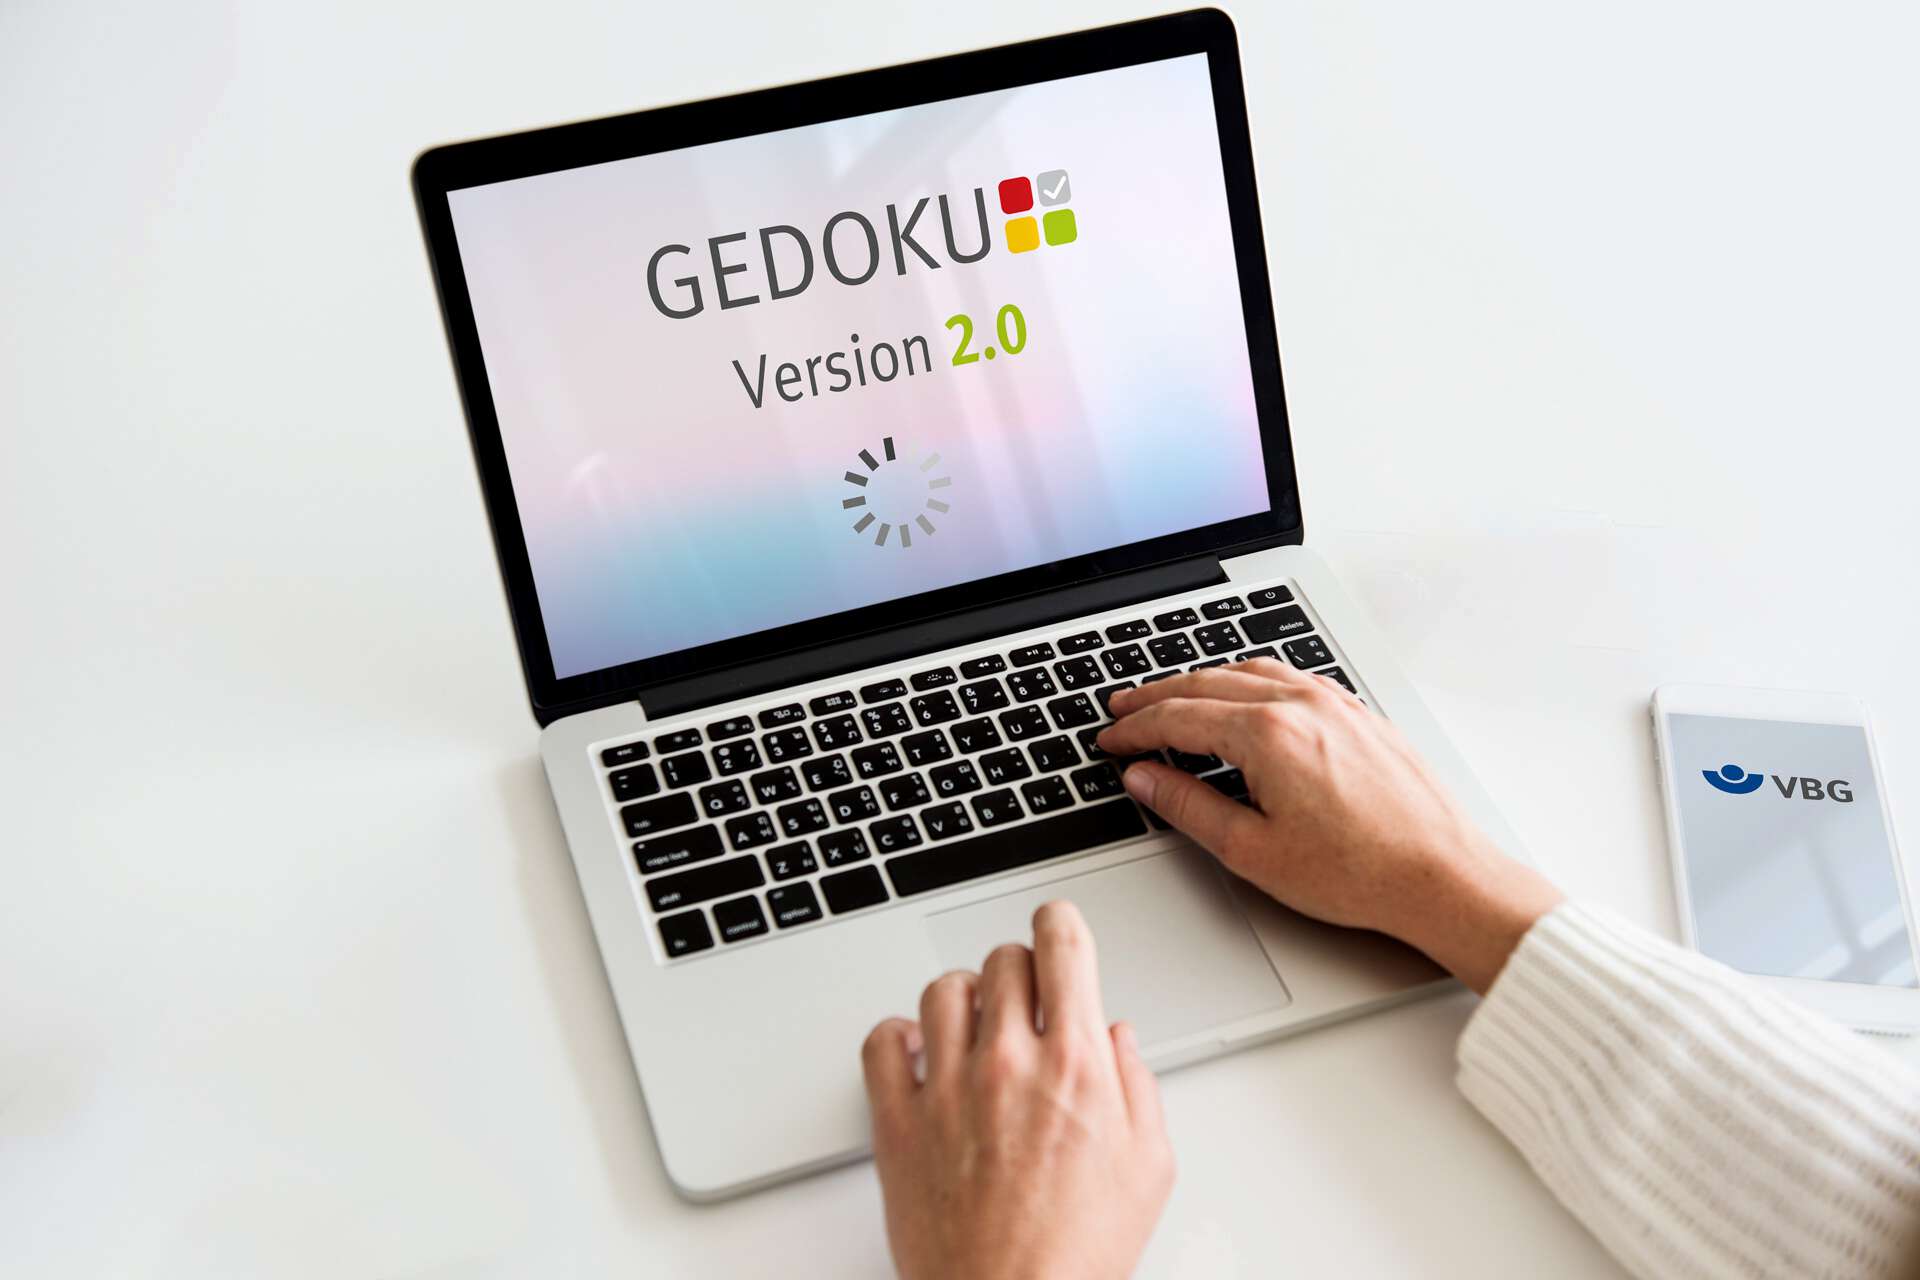 GEDOKU - Mockup: Symbolisch dargestelltes Logo der Anwendung auf dem Bildschirm eines Laptops. #filzer